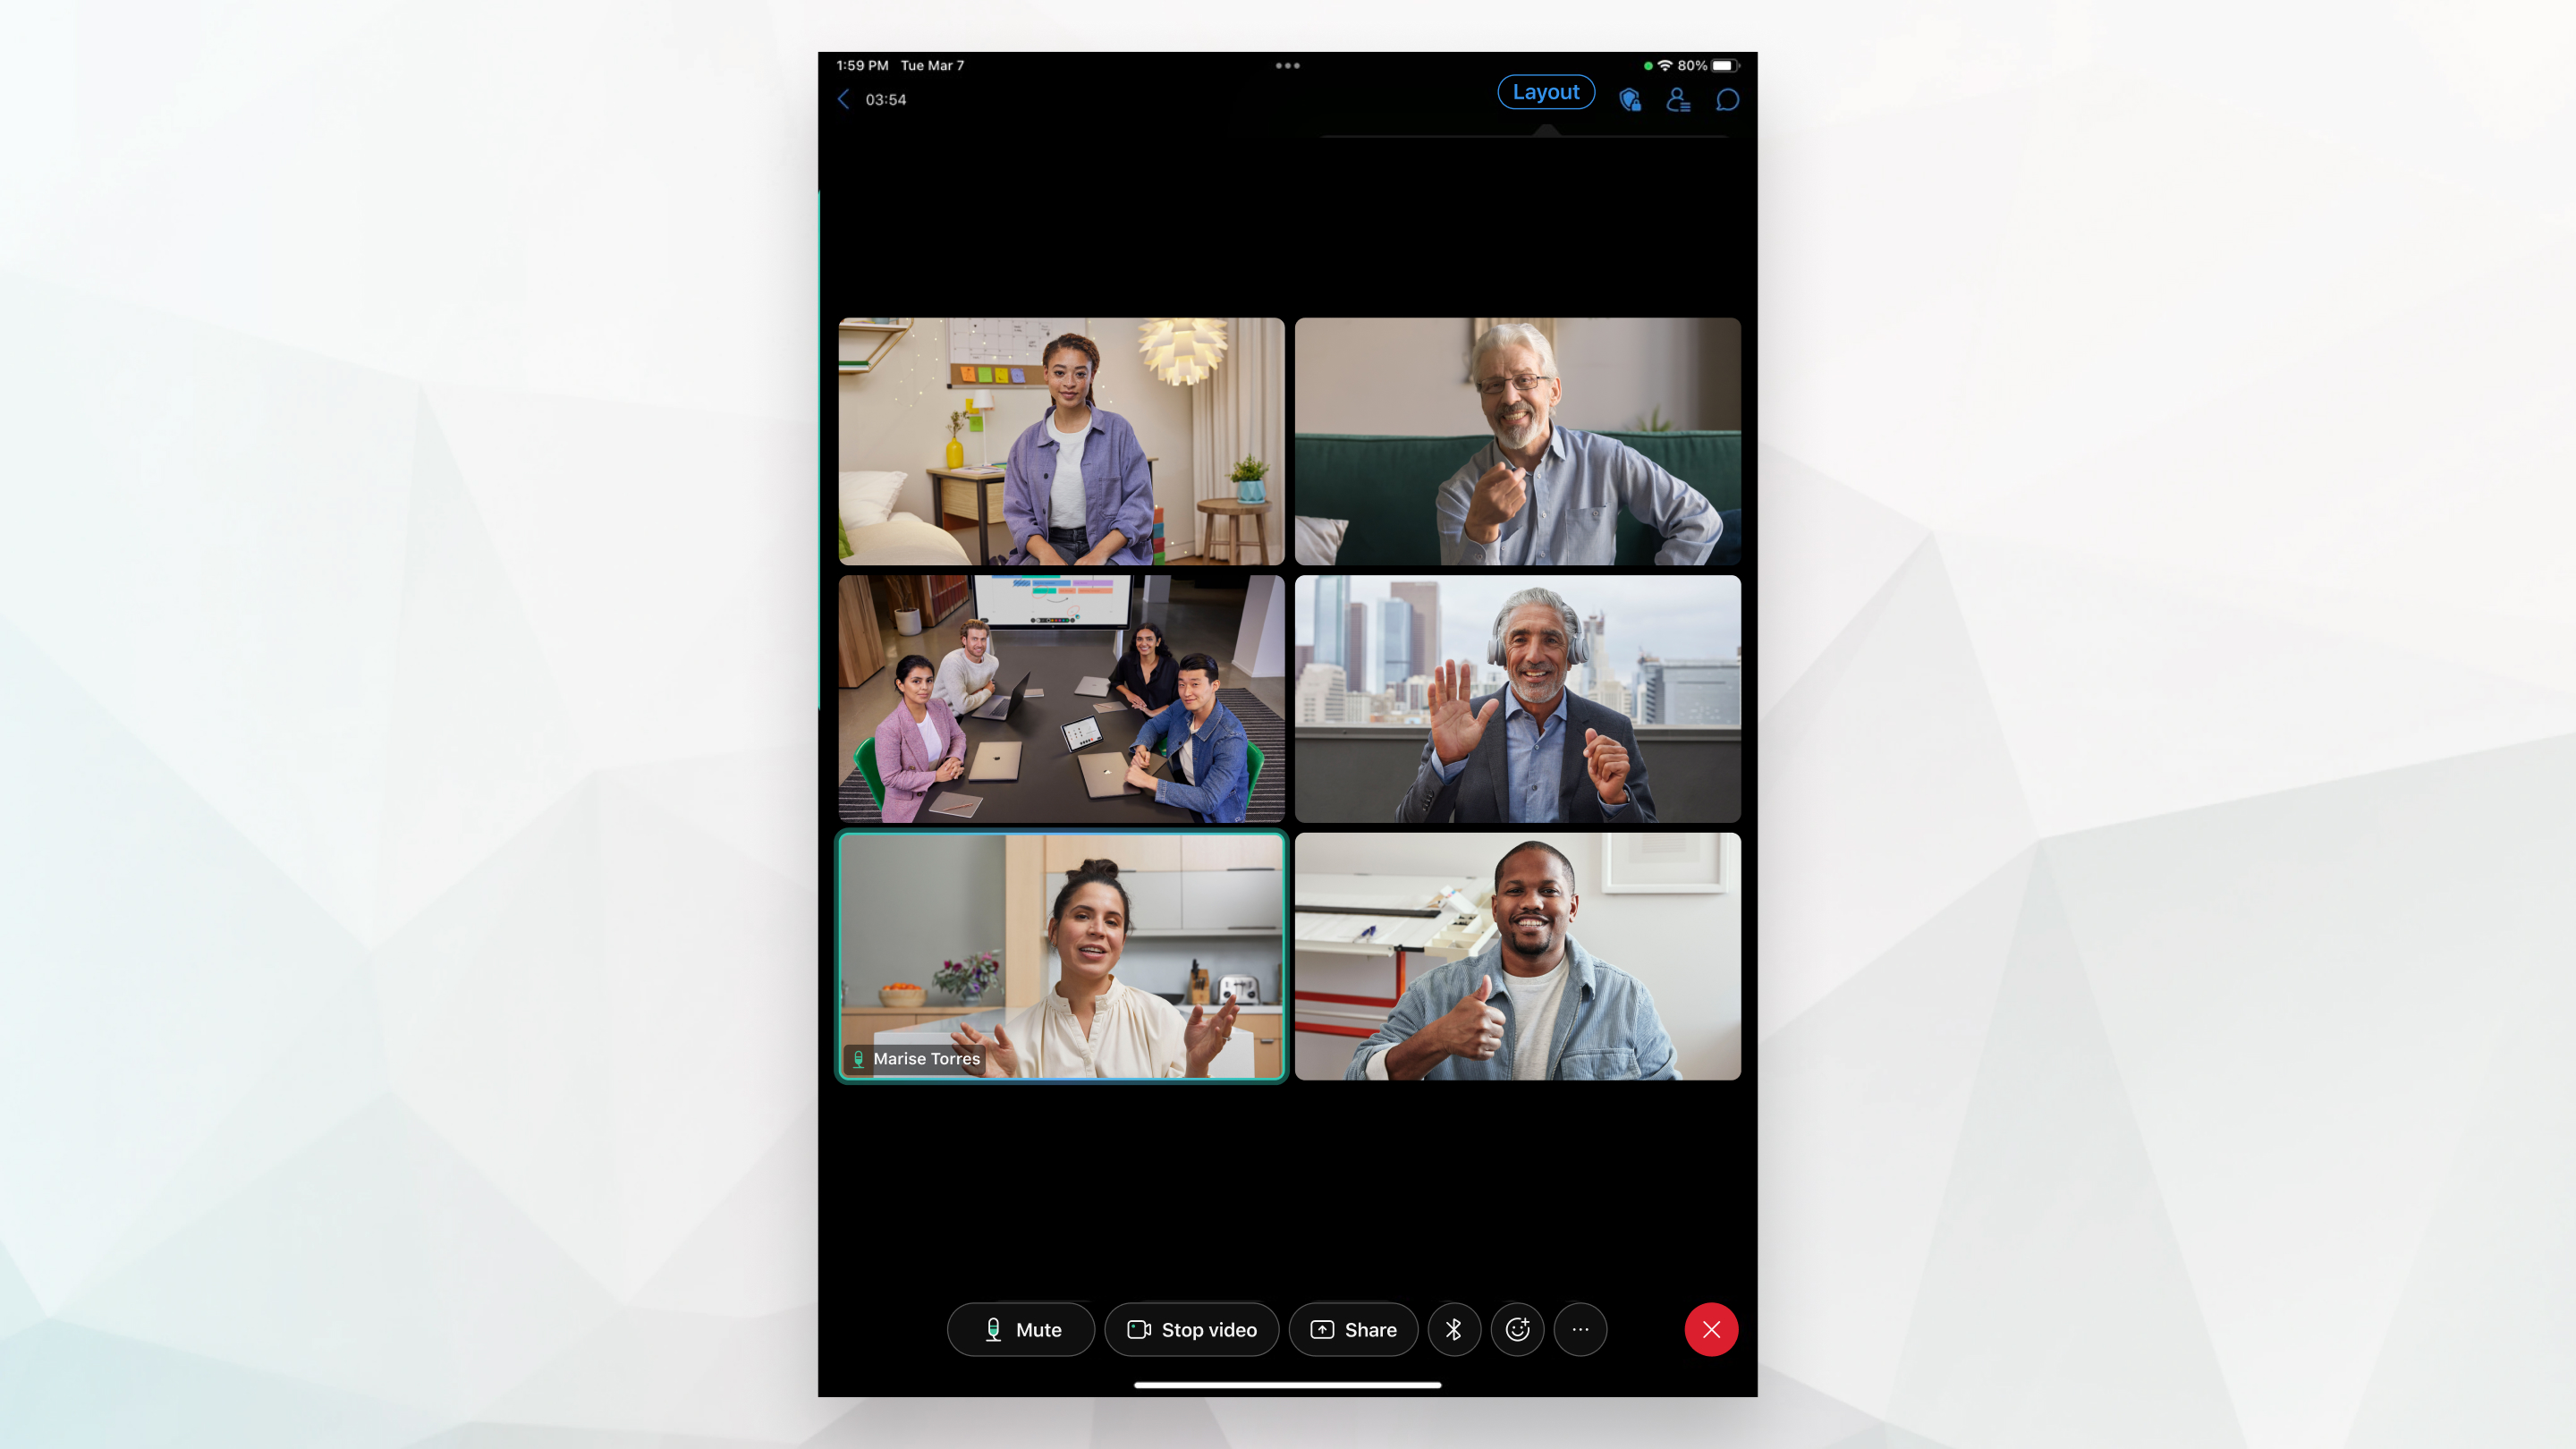 2x3 modos de exibição em grade durante uma reunião no iPad